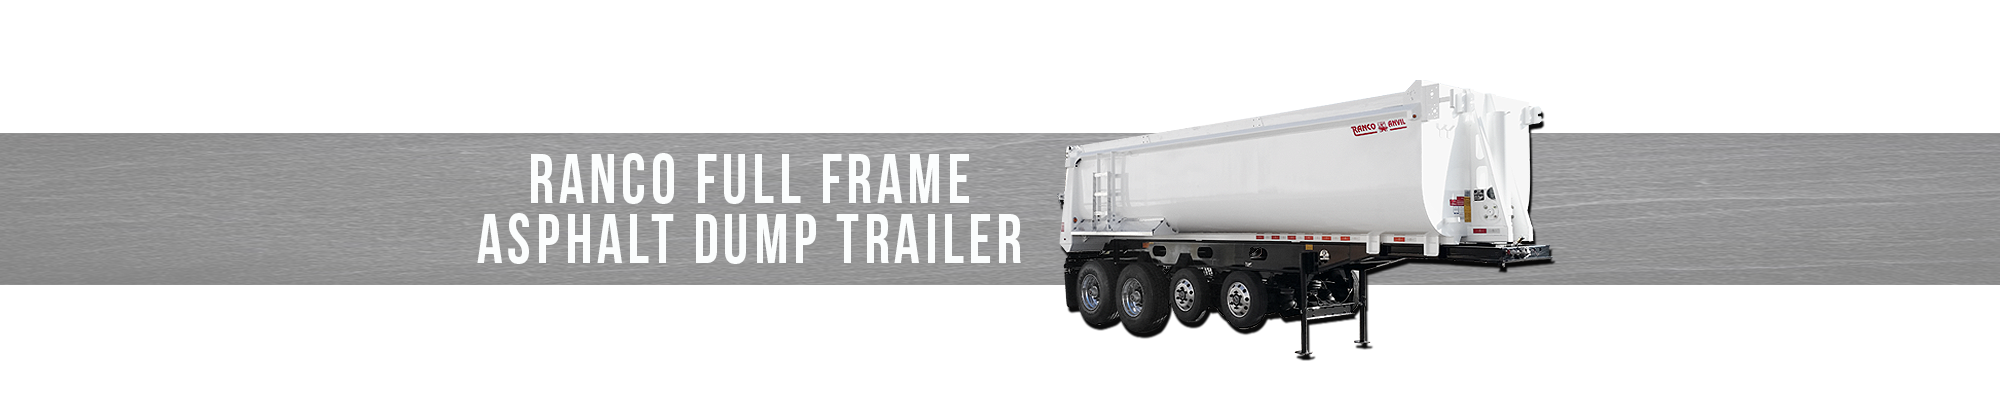 RANCO Full Frame Asphalt Dump Trailer